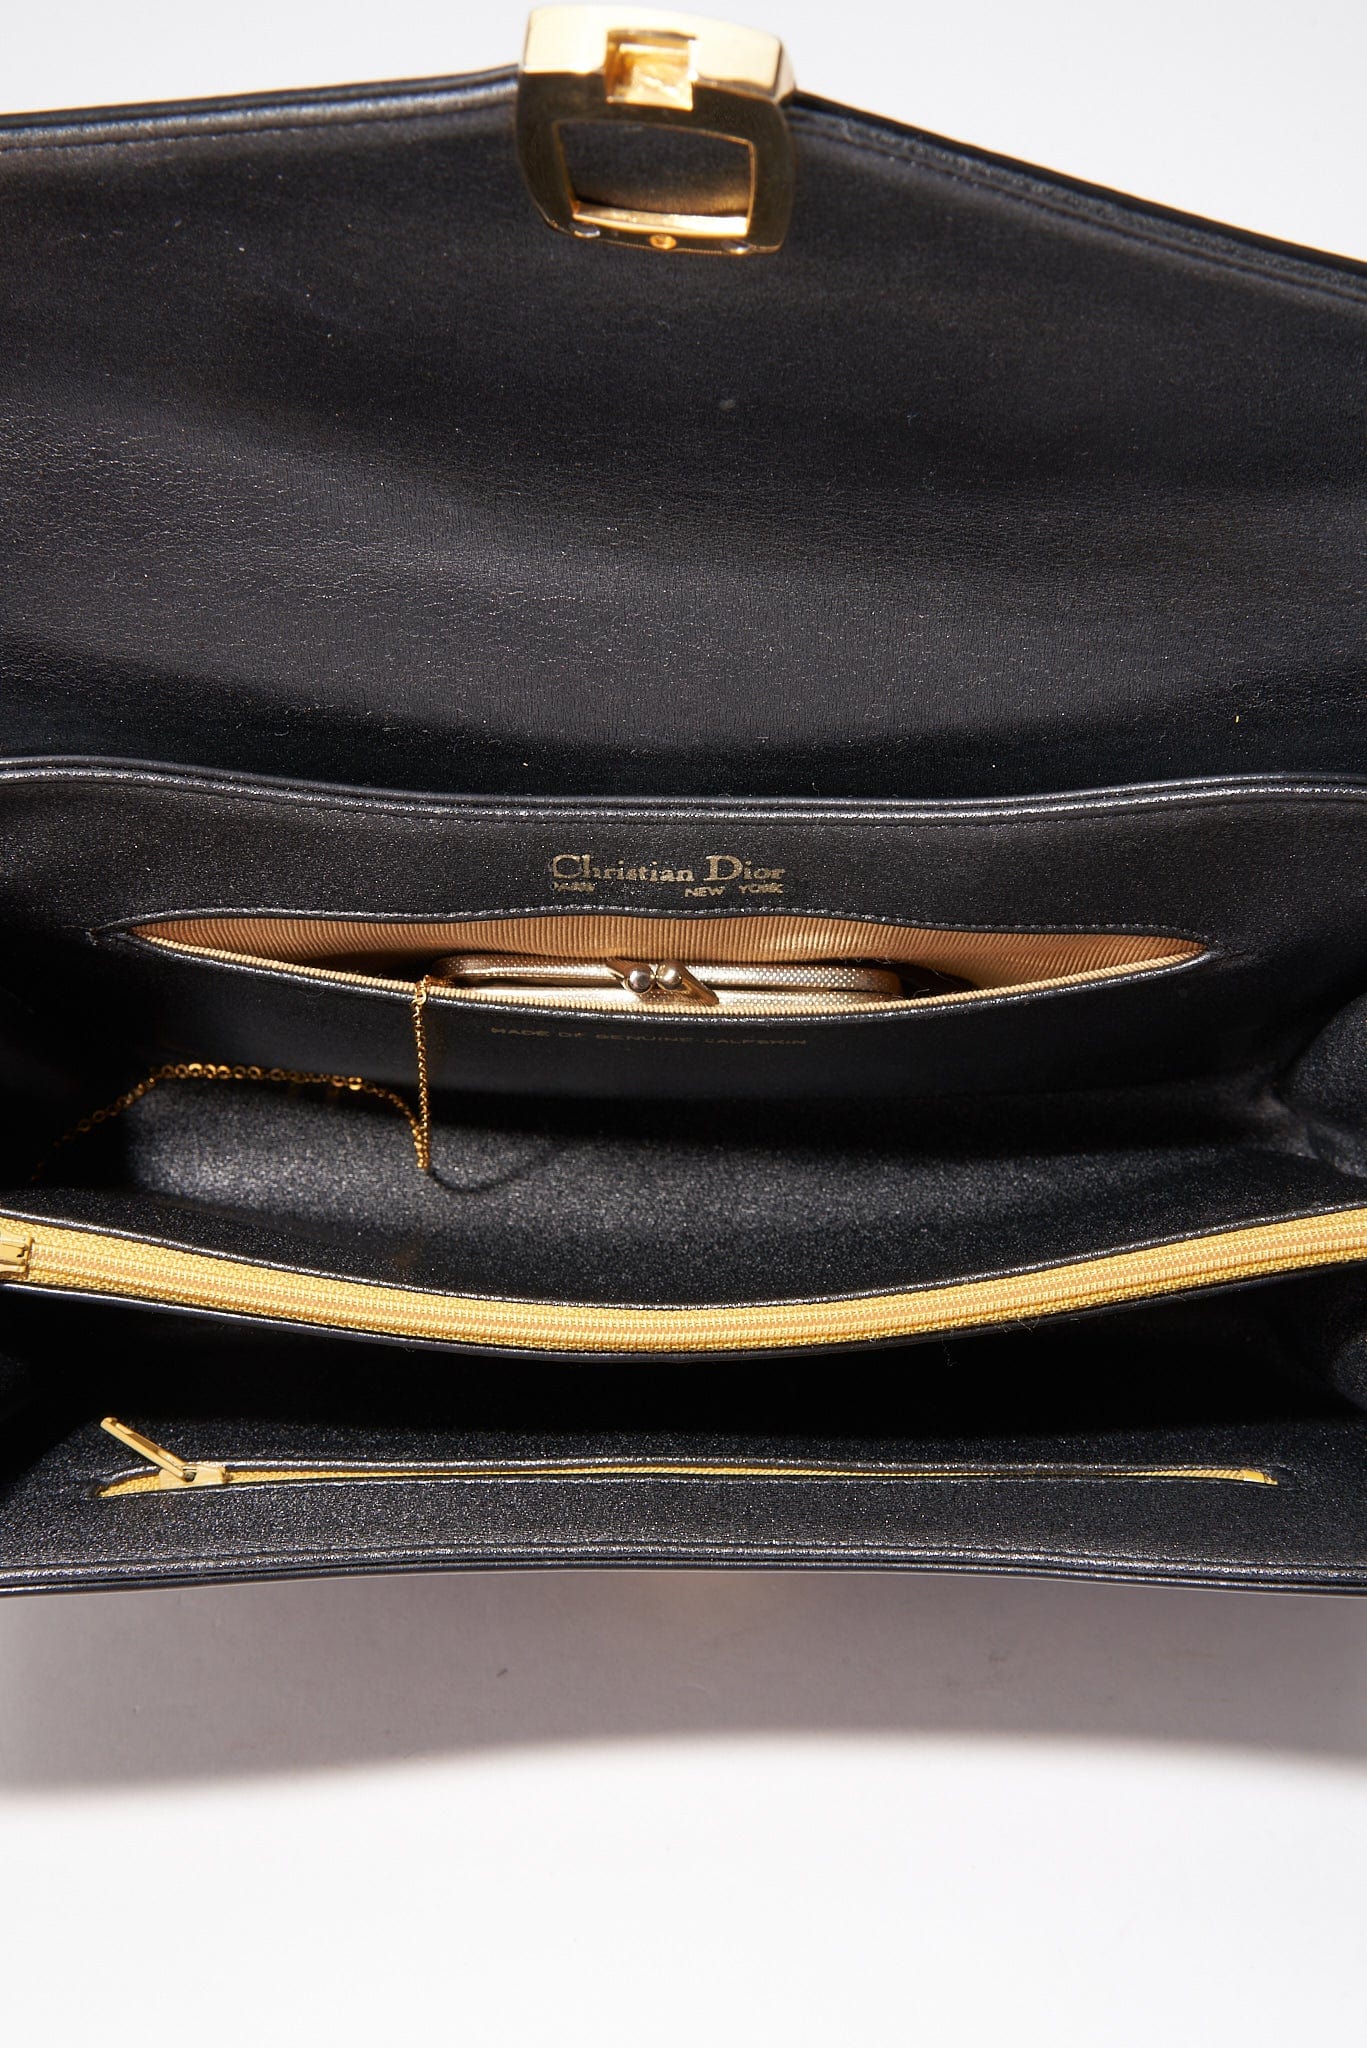 Vintage Dior Black Leather Bag